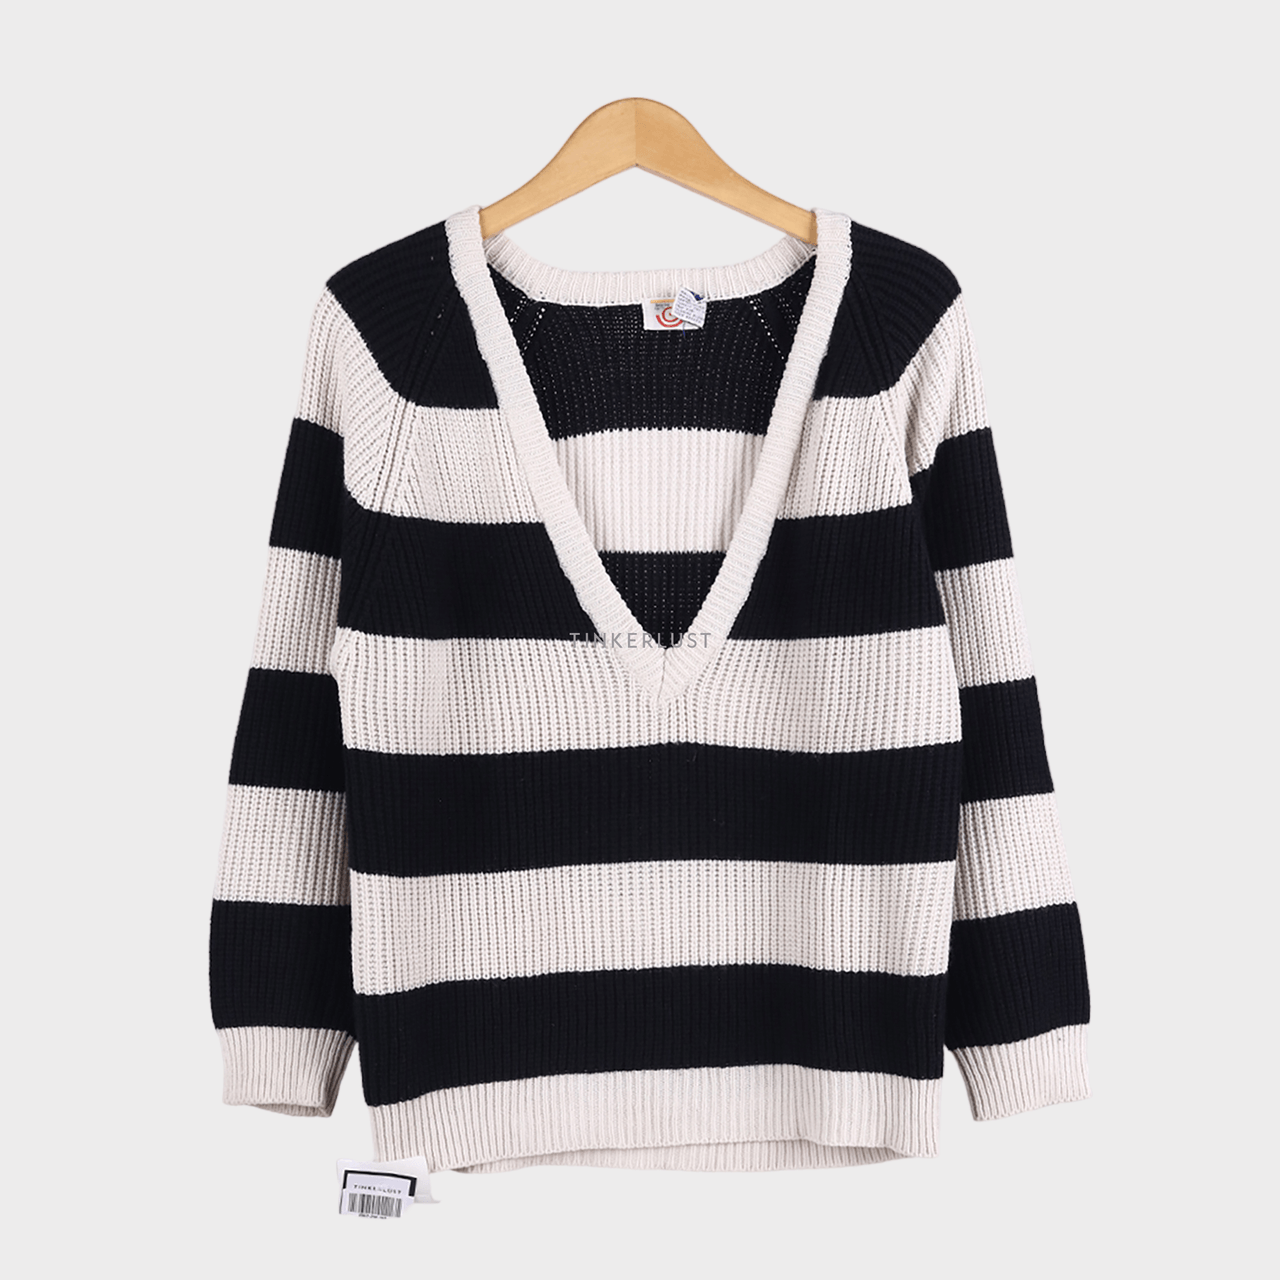 Private Collection Black & White Sweater